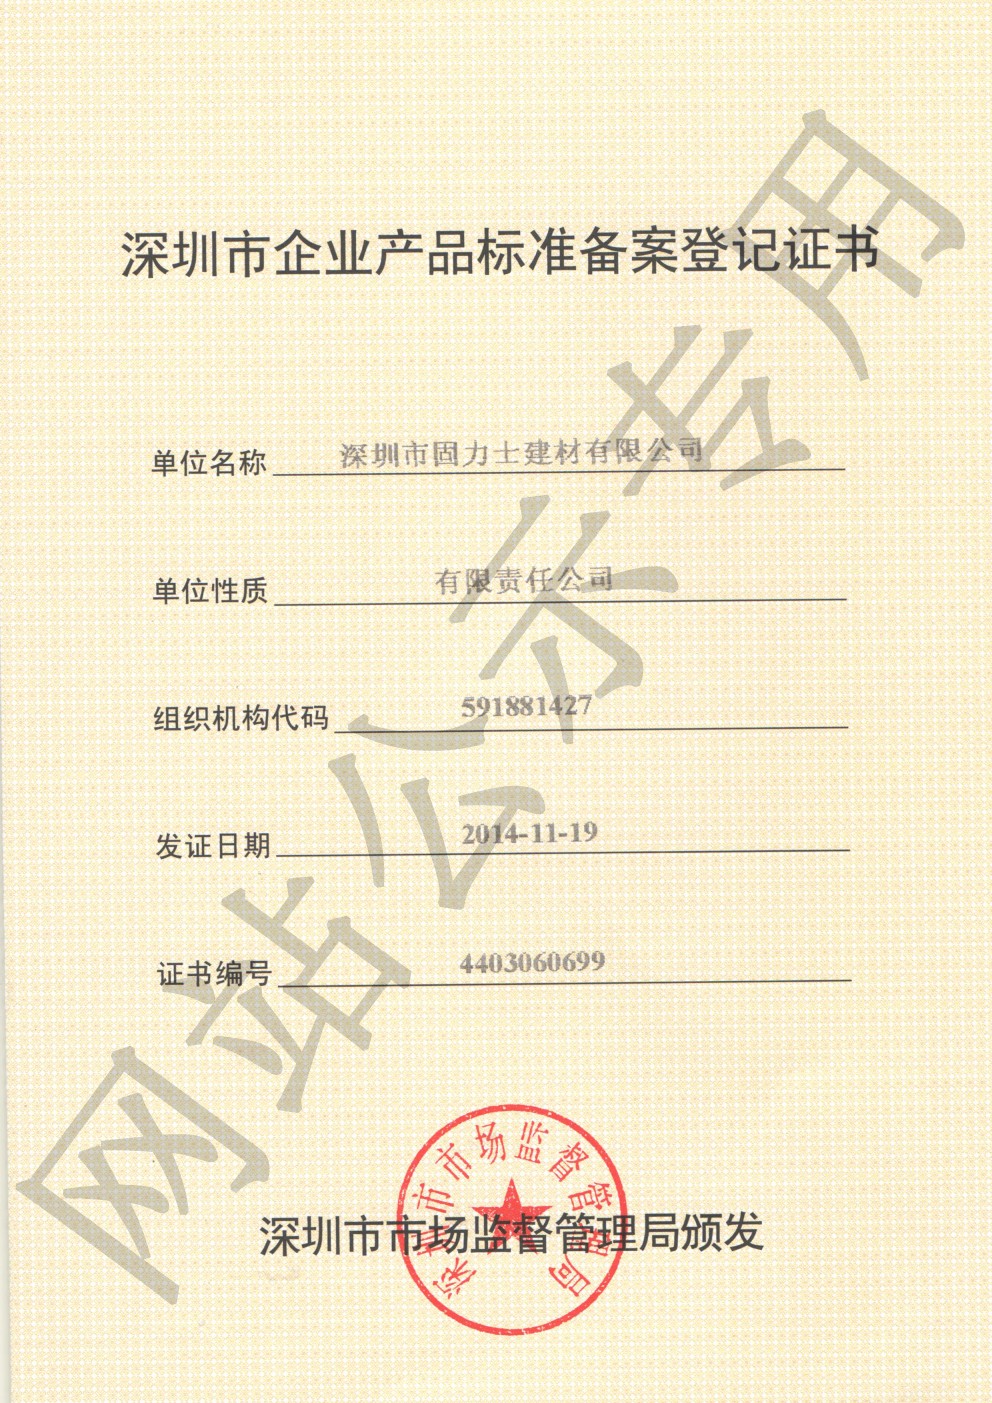 弋江企业产品标准登记证书